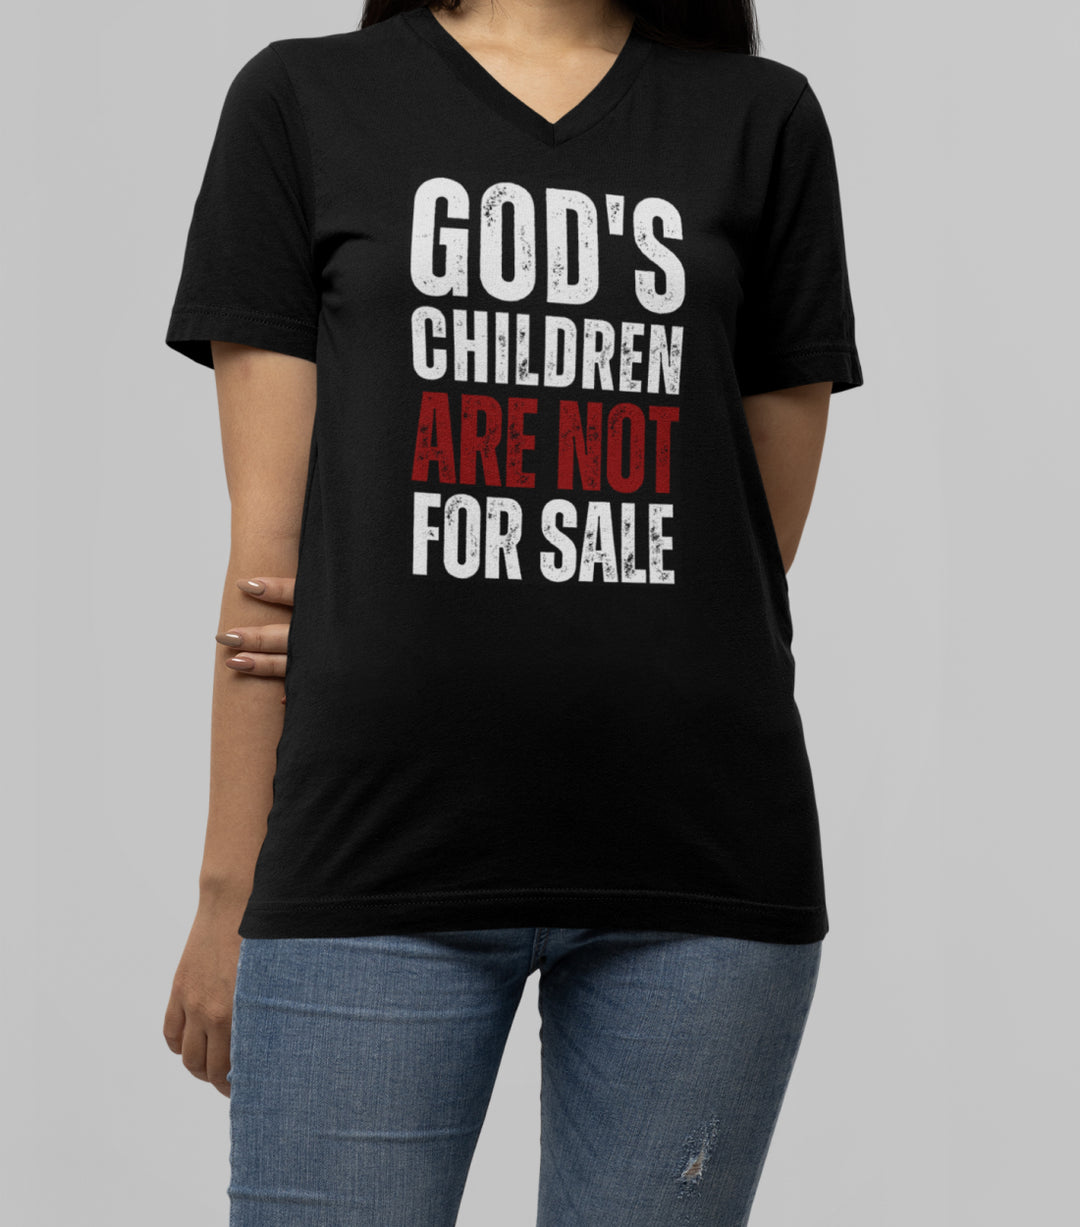 God's Children Are Not For Sale - Unisex V-Neck Tee